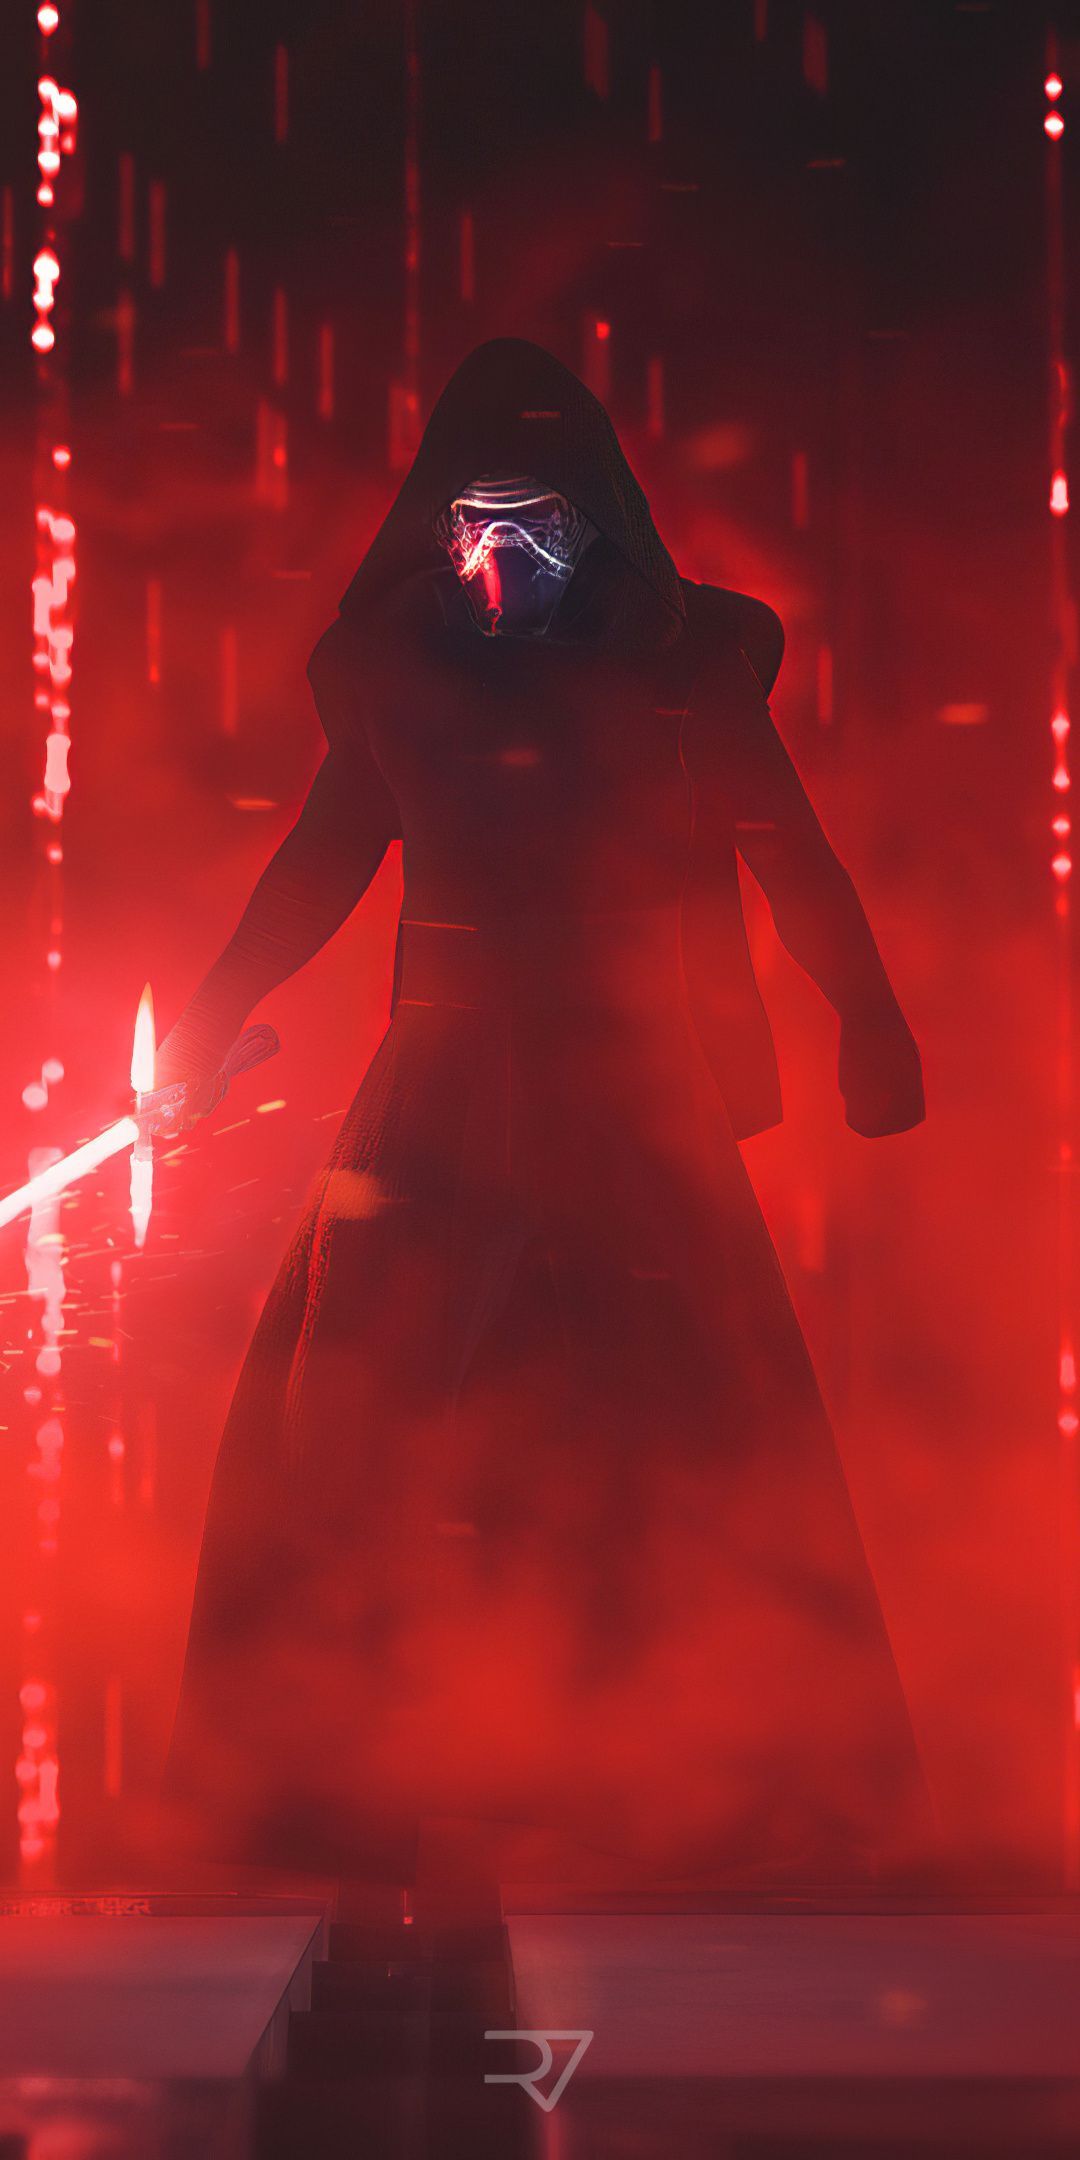 Kylo Ren villain Star Wars movie 2019 wallpaper Wars Vader of Star Wars Vader. Star wars background, Star wars image, Star wars kylo ren